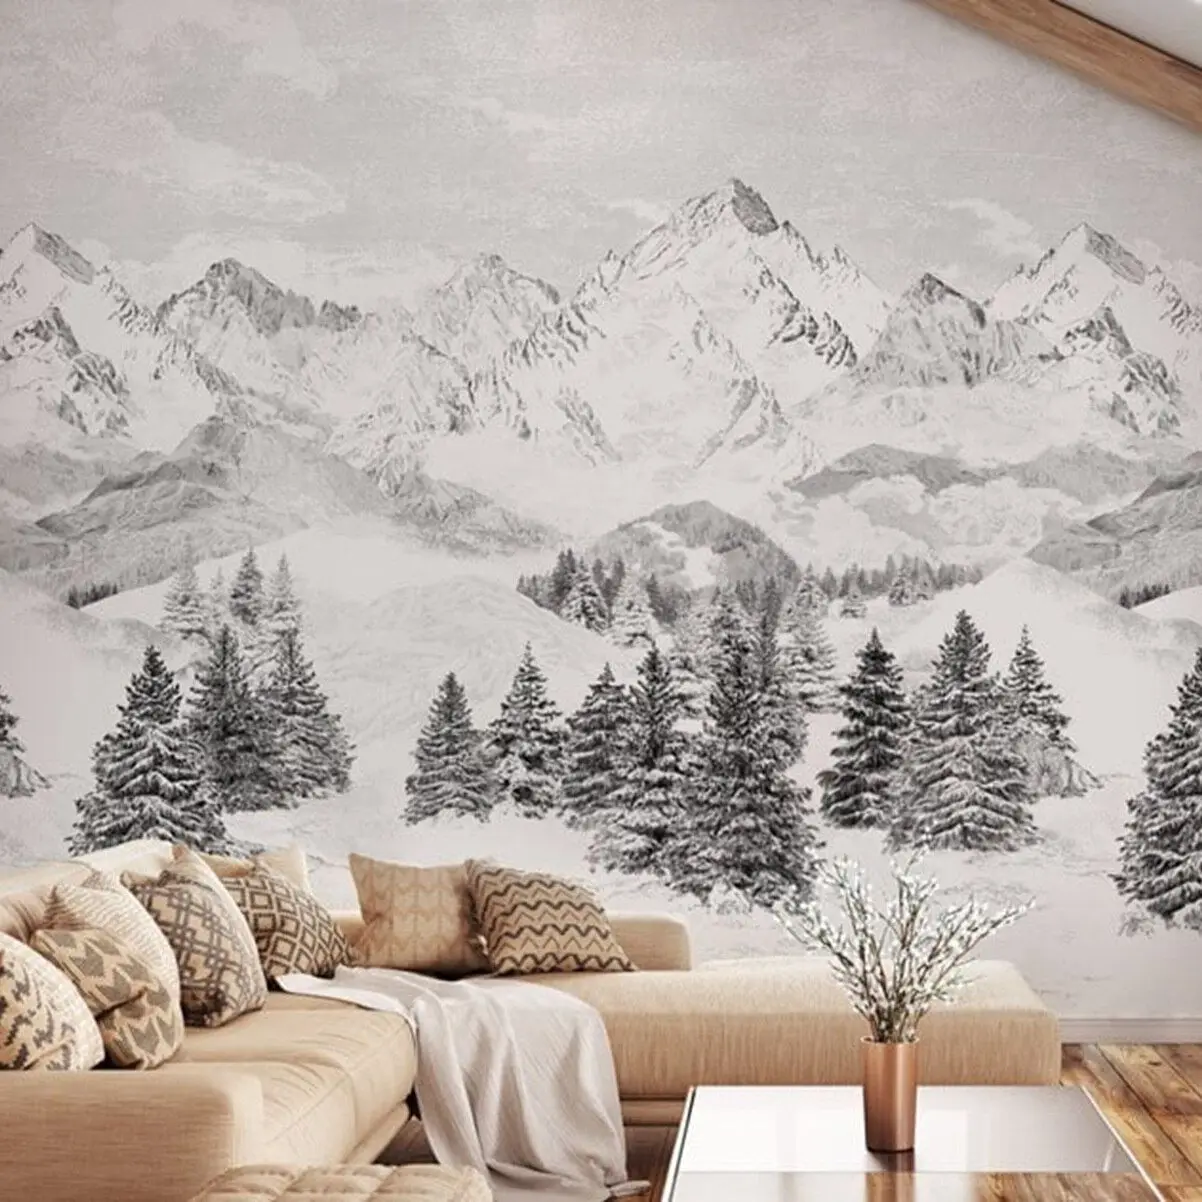 

Панорамный пейзаж, нетканые обои Les Cimes, Снежная гора, Настенная роспись, скандинавские обои черно-белого цвета